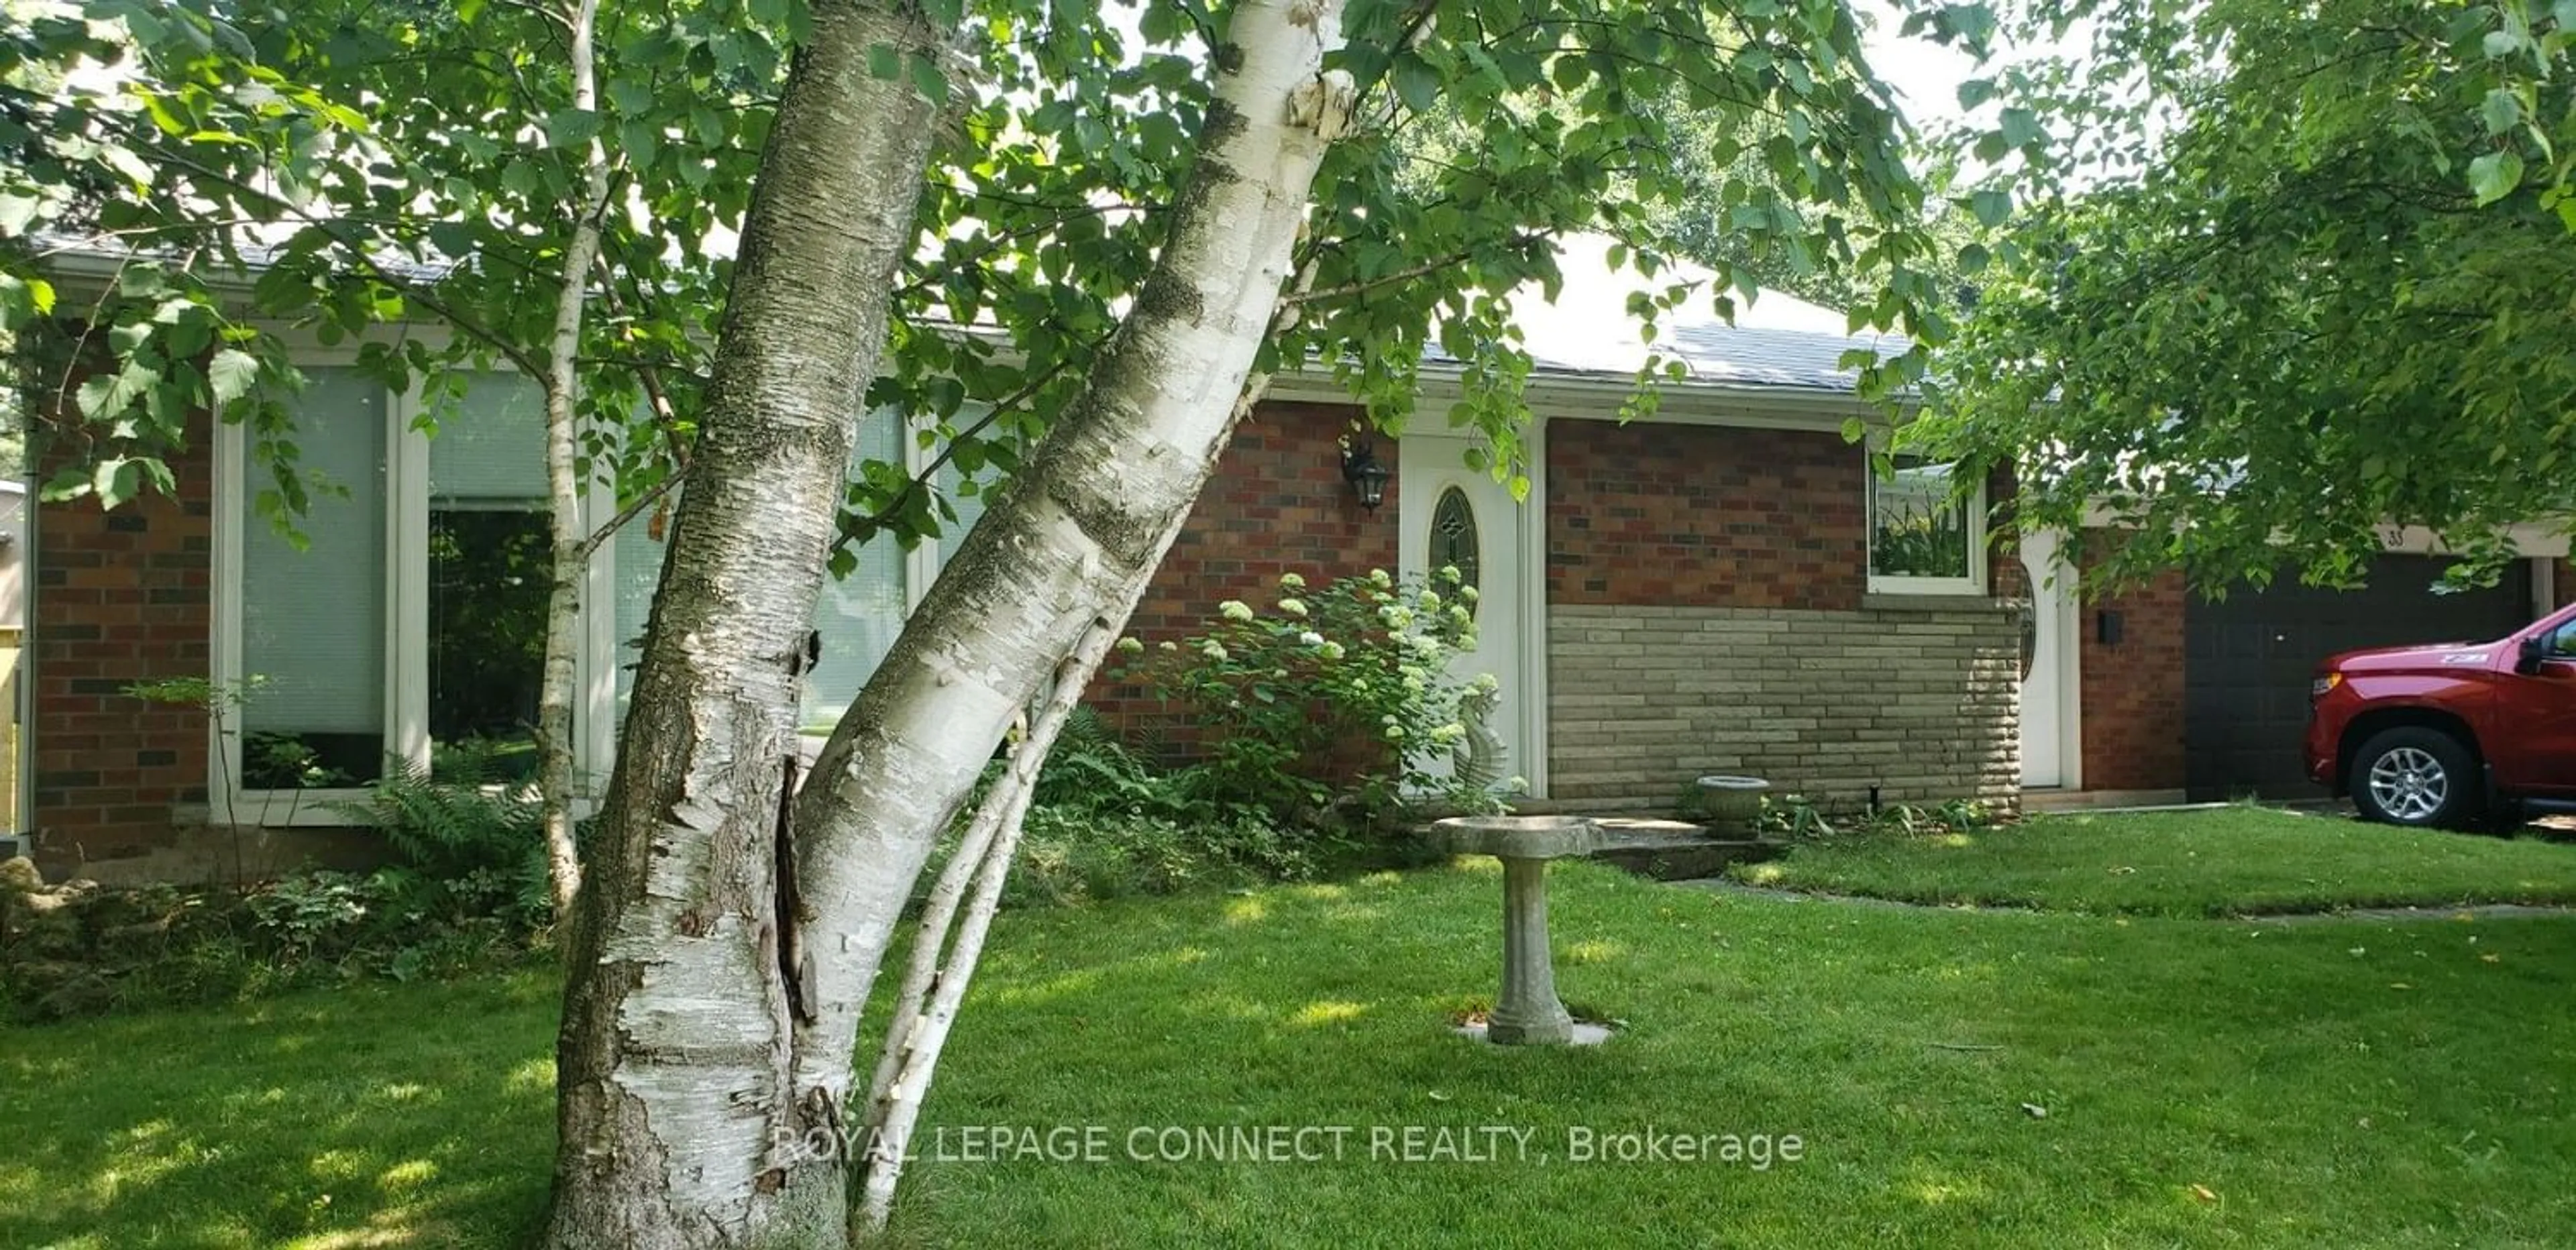 Cottage for 33 Watson St, Toronto Ontario M1C 1E2